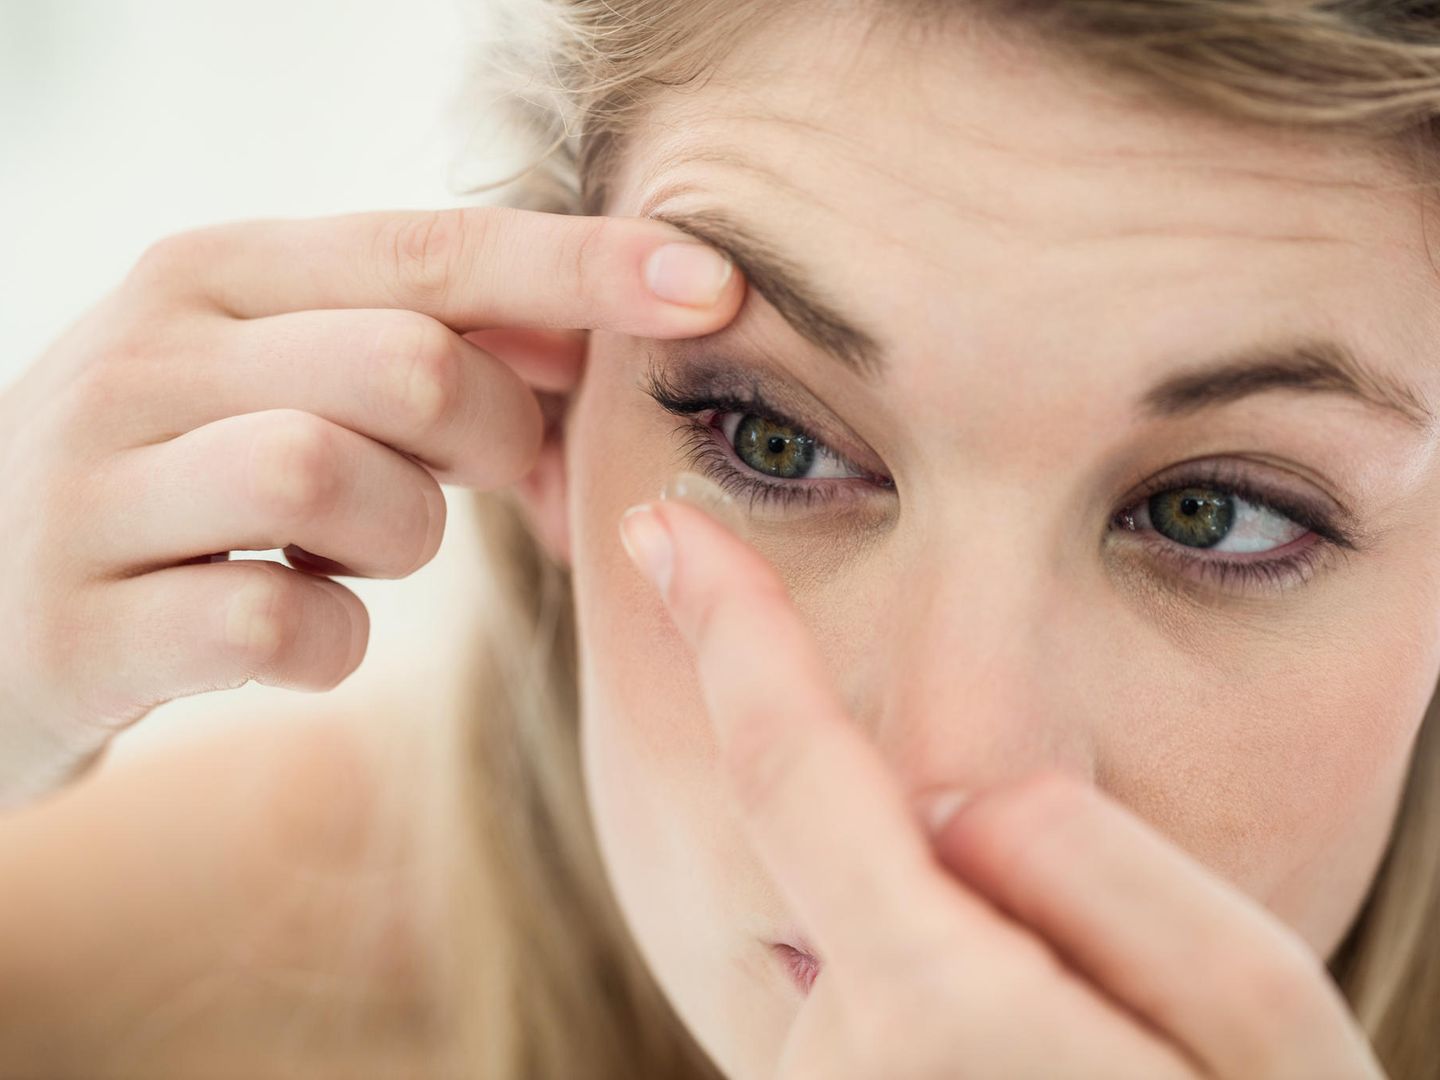 Kontaktlinsen rausnehmen - So einfach geht`s